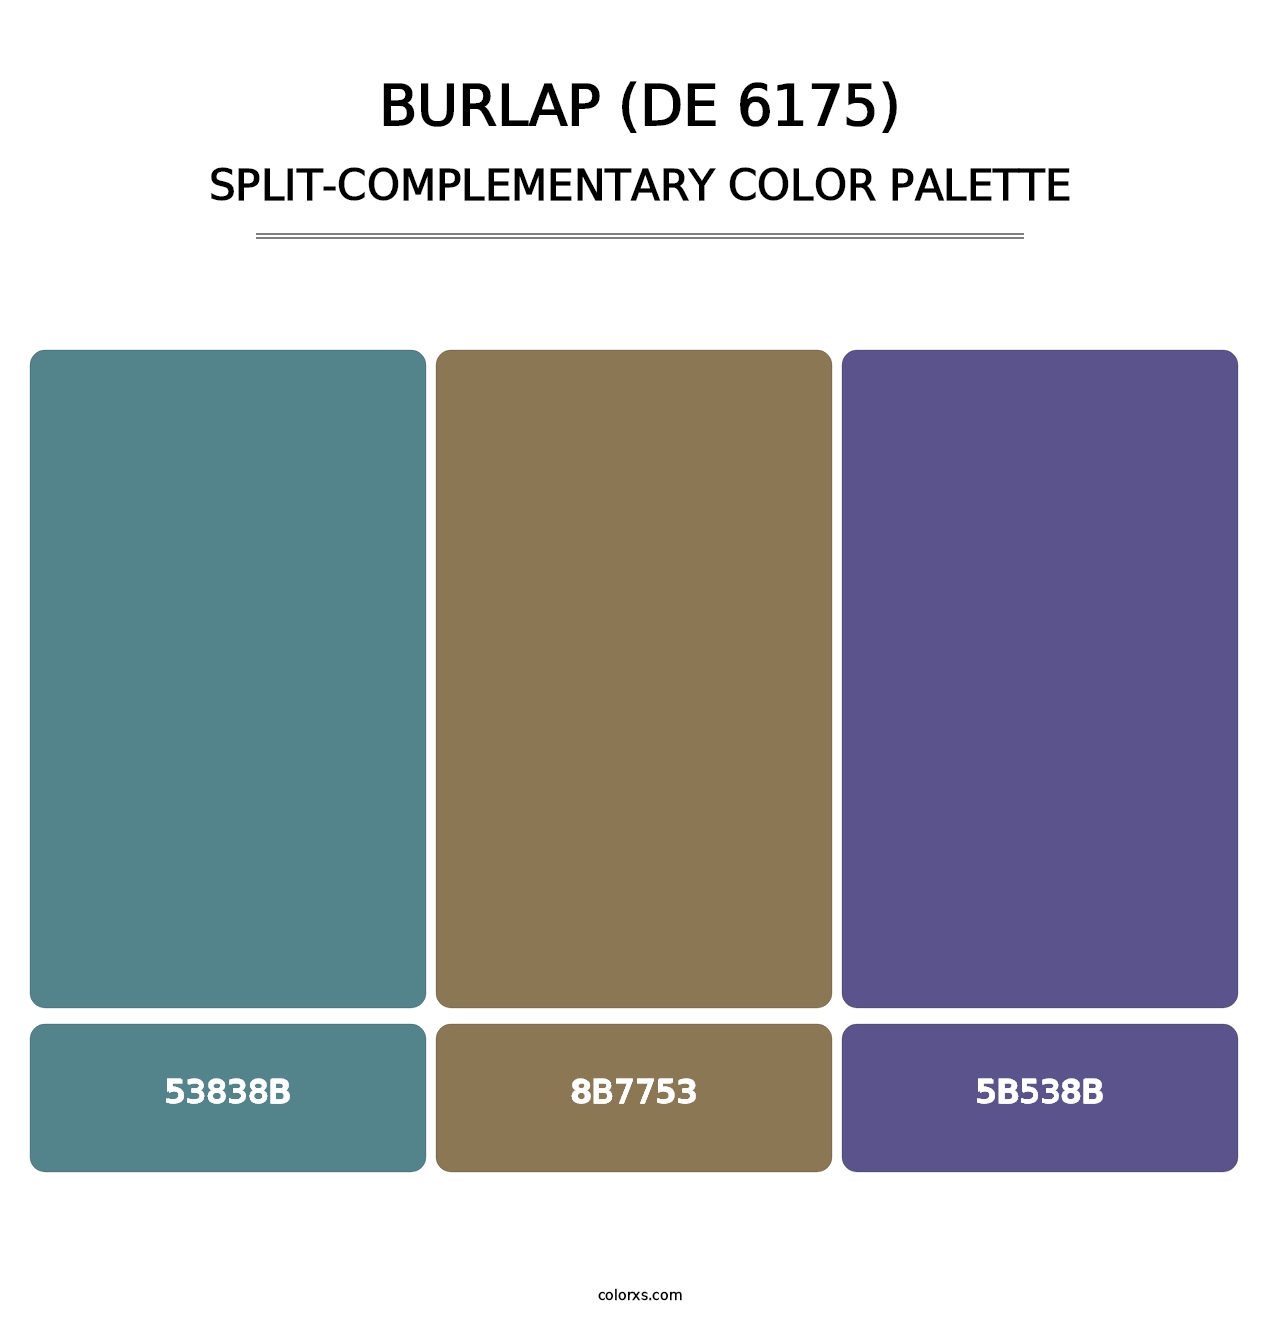 Burlap (DE 6175) - Split-Complementary Color Palette